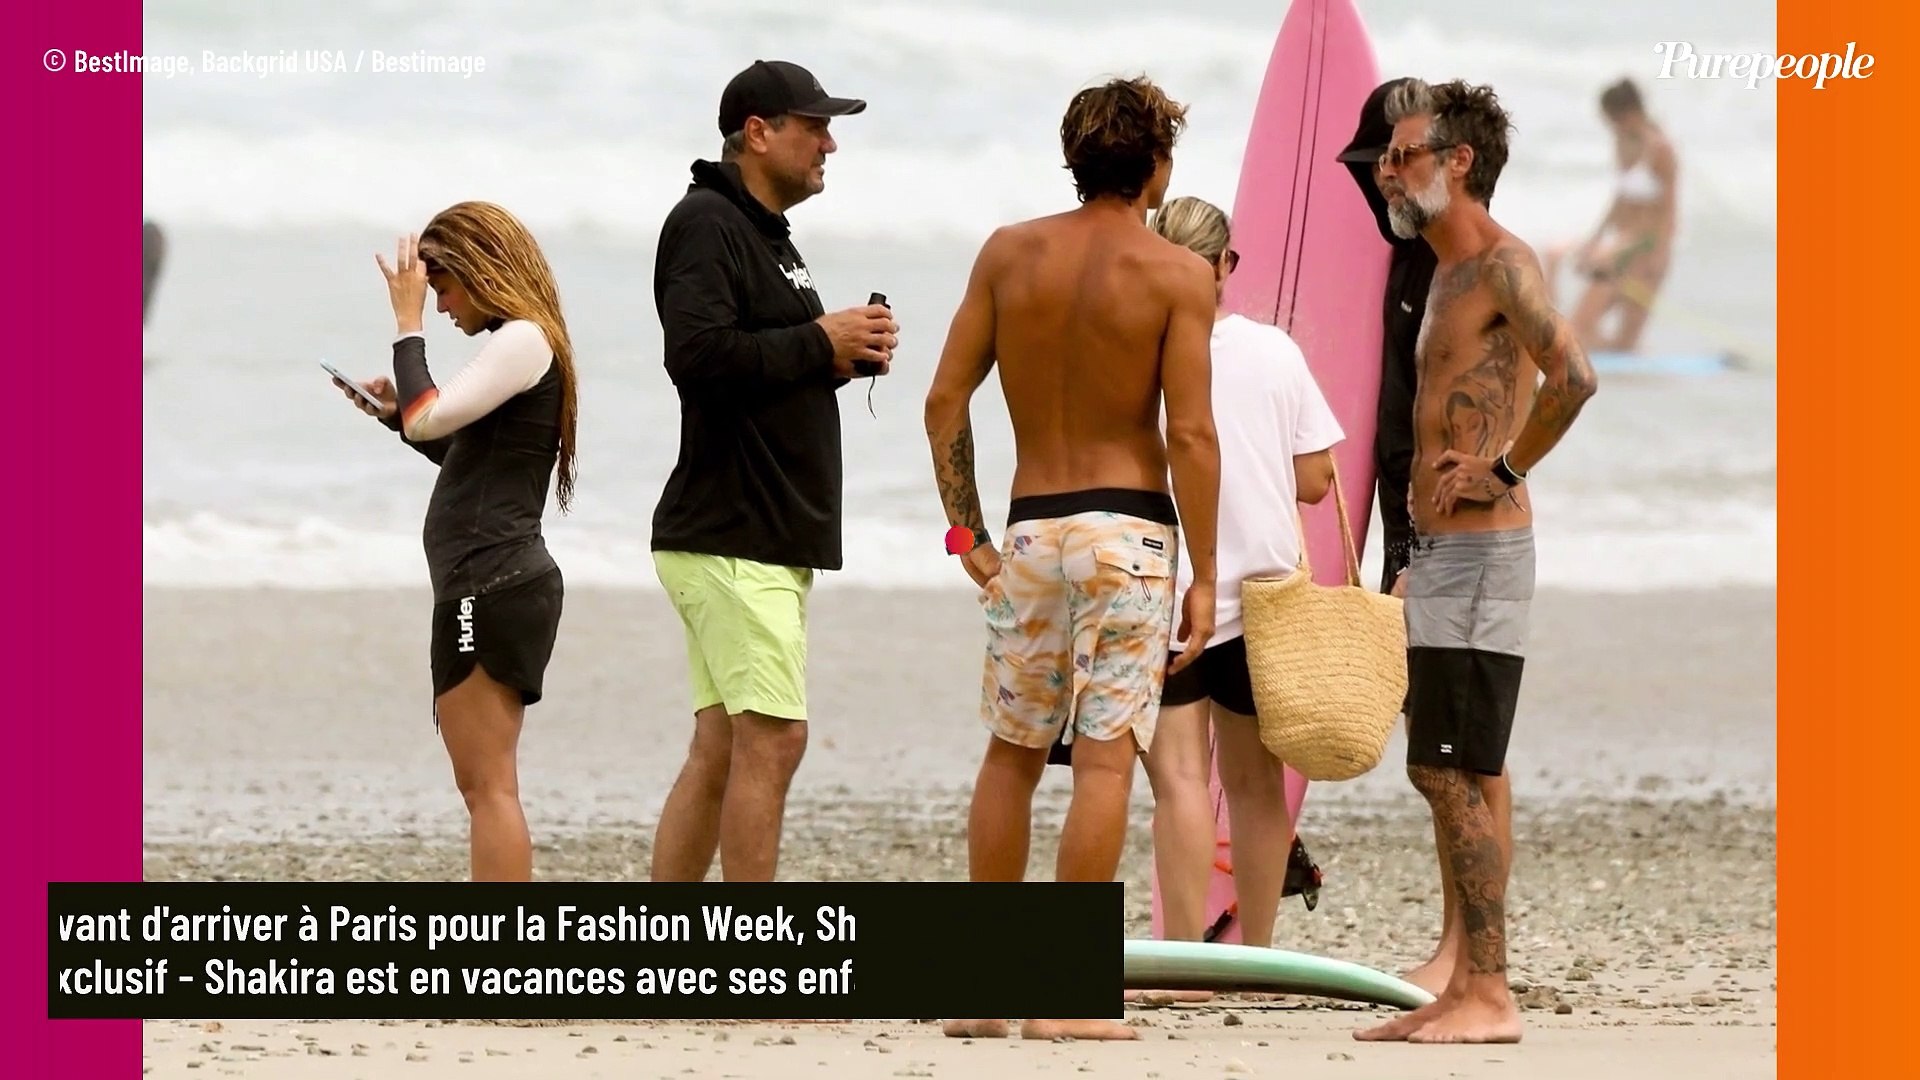 PHOTOS Shakira entourée de surfeurs très musclés pour une journée à la plage  dans un lieu paradisiaque - Vidéo Dailymotion